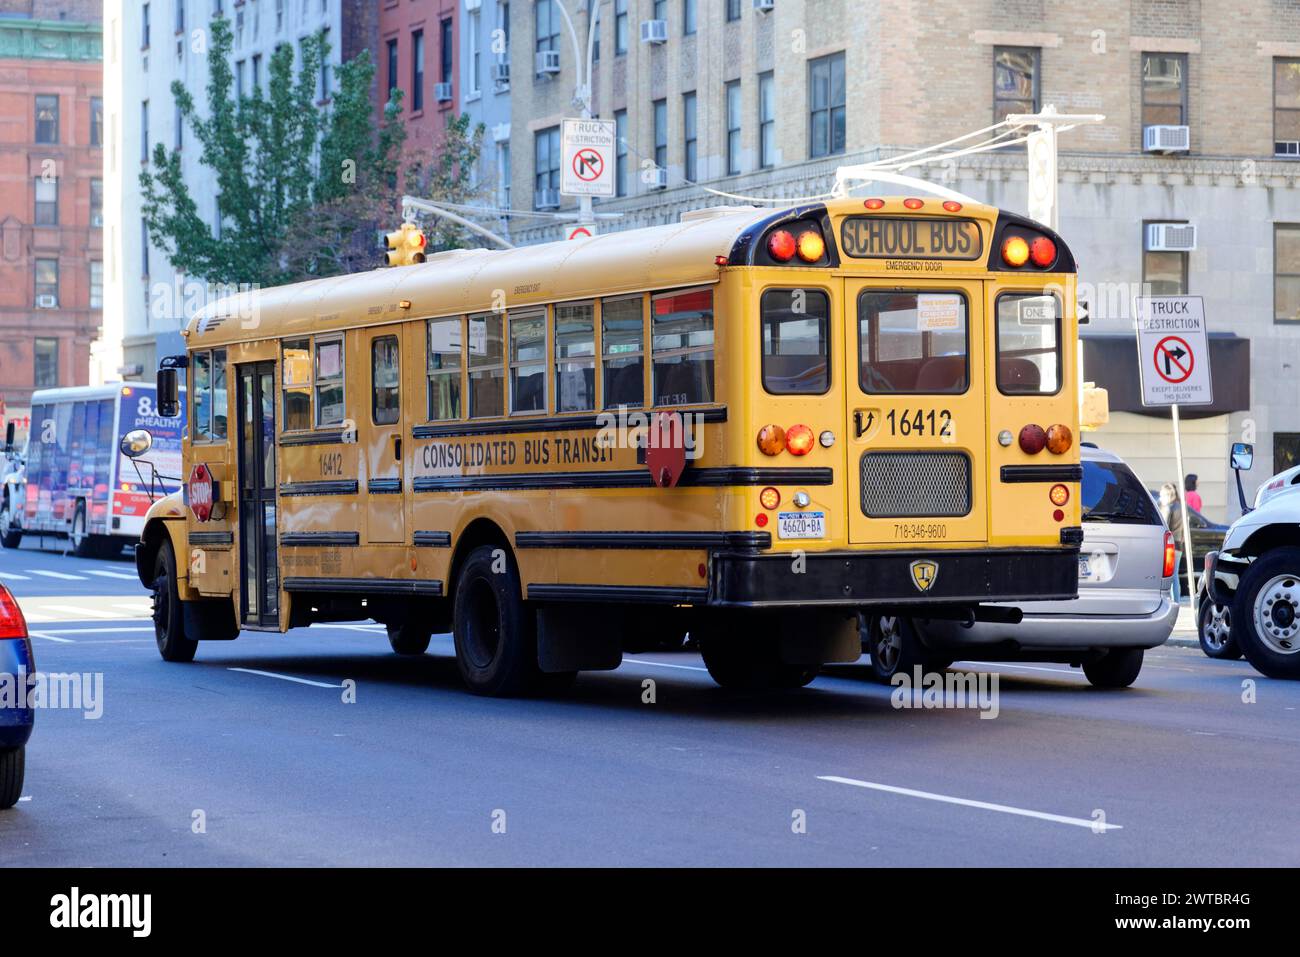 Vue latérale d'un autobus scolaire jaune en mouvement dans une rue de la ville, centre-ville de Manhattan, Manhattan, New York City, USA, Amérique du Nord Banque D'Images